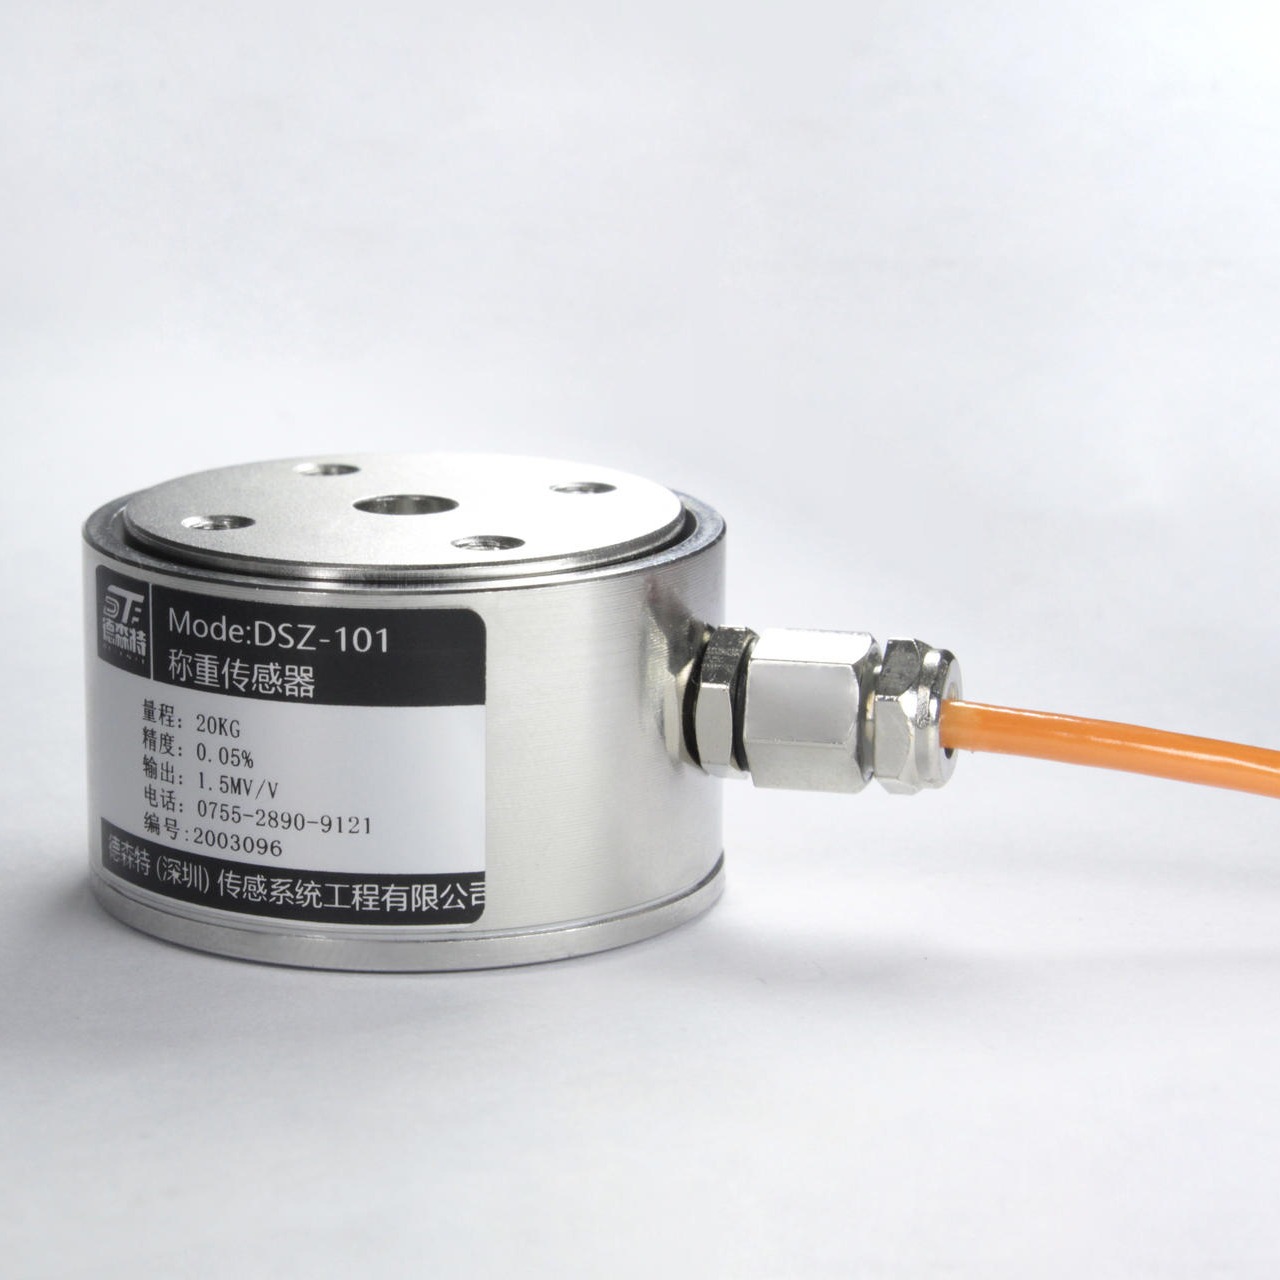 DYZ-101微型柱式称重传感器工业 称重不锈钢材质拉压力测力传感器微型小尺寸 高精度 称重传感器 测压力机械手